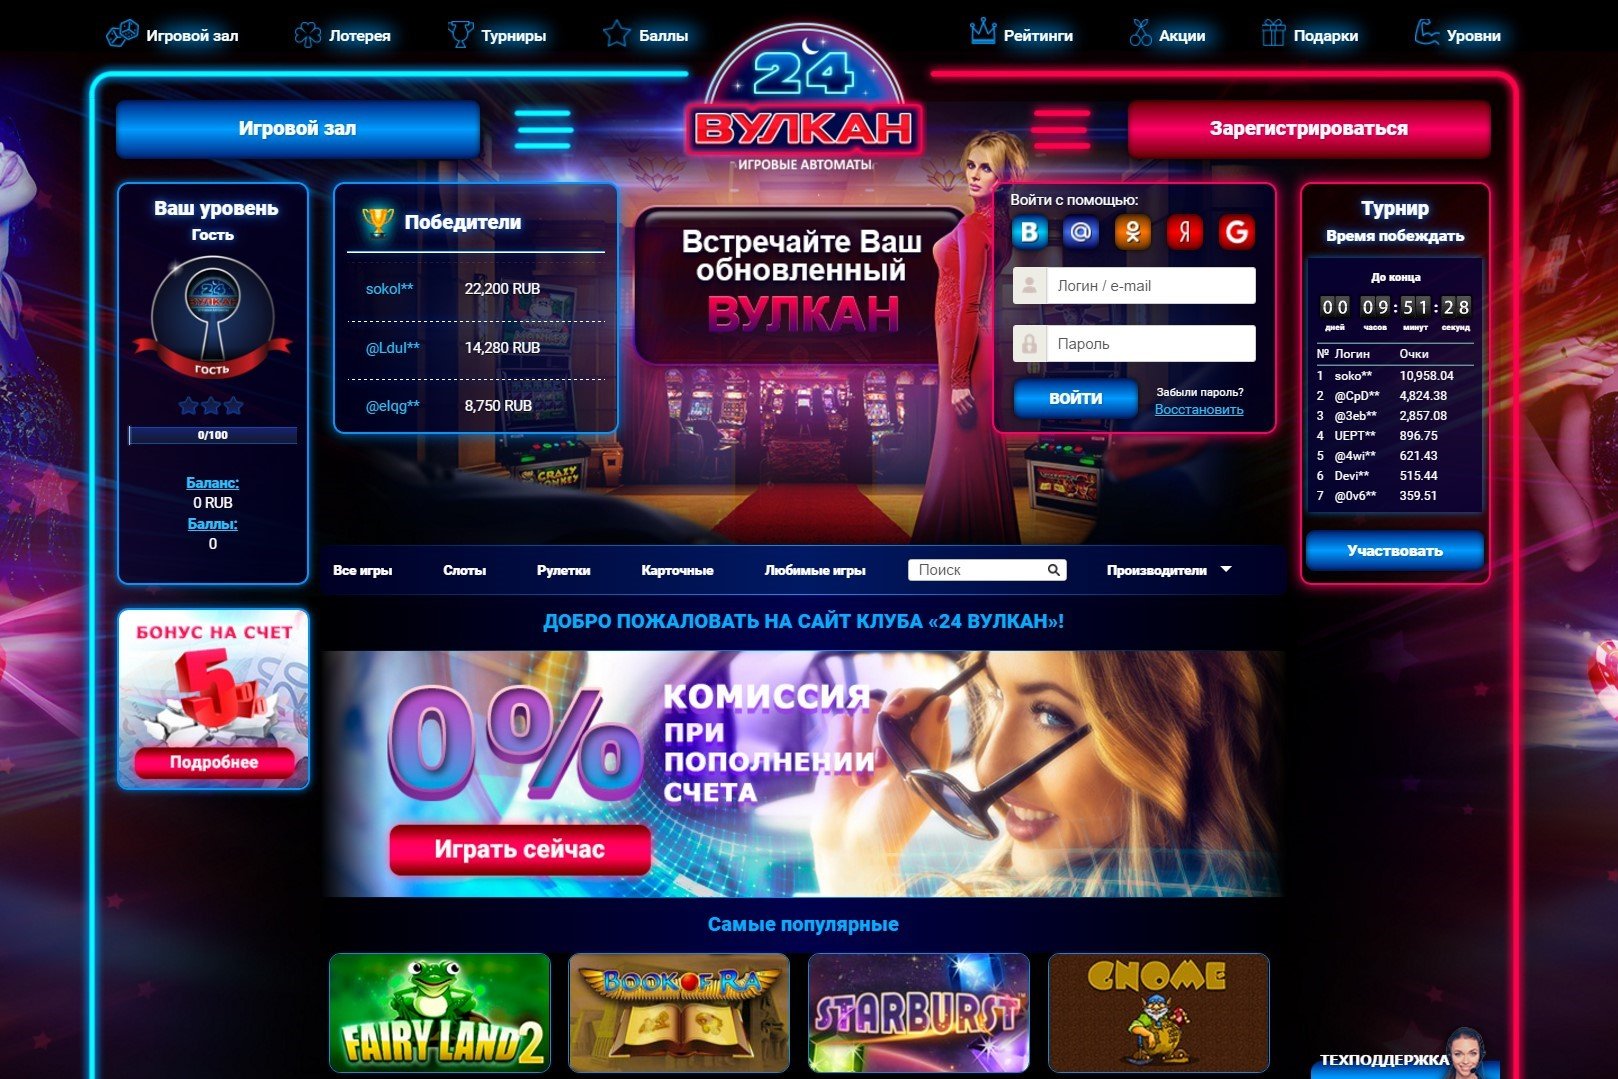 Казино вулкан 24 официальный сайт скачать мобильную версию casino x зеркало плей casinochka ru